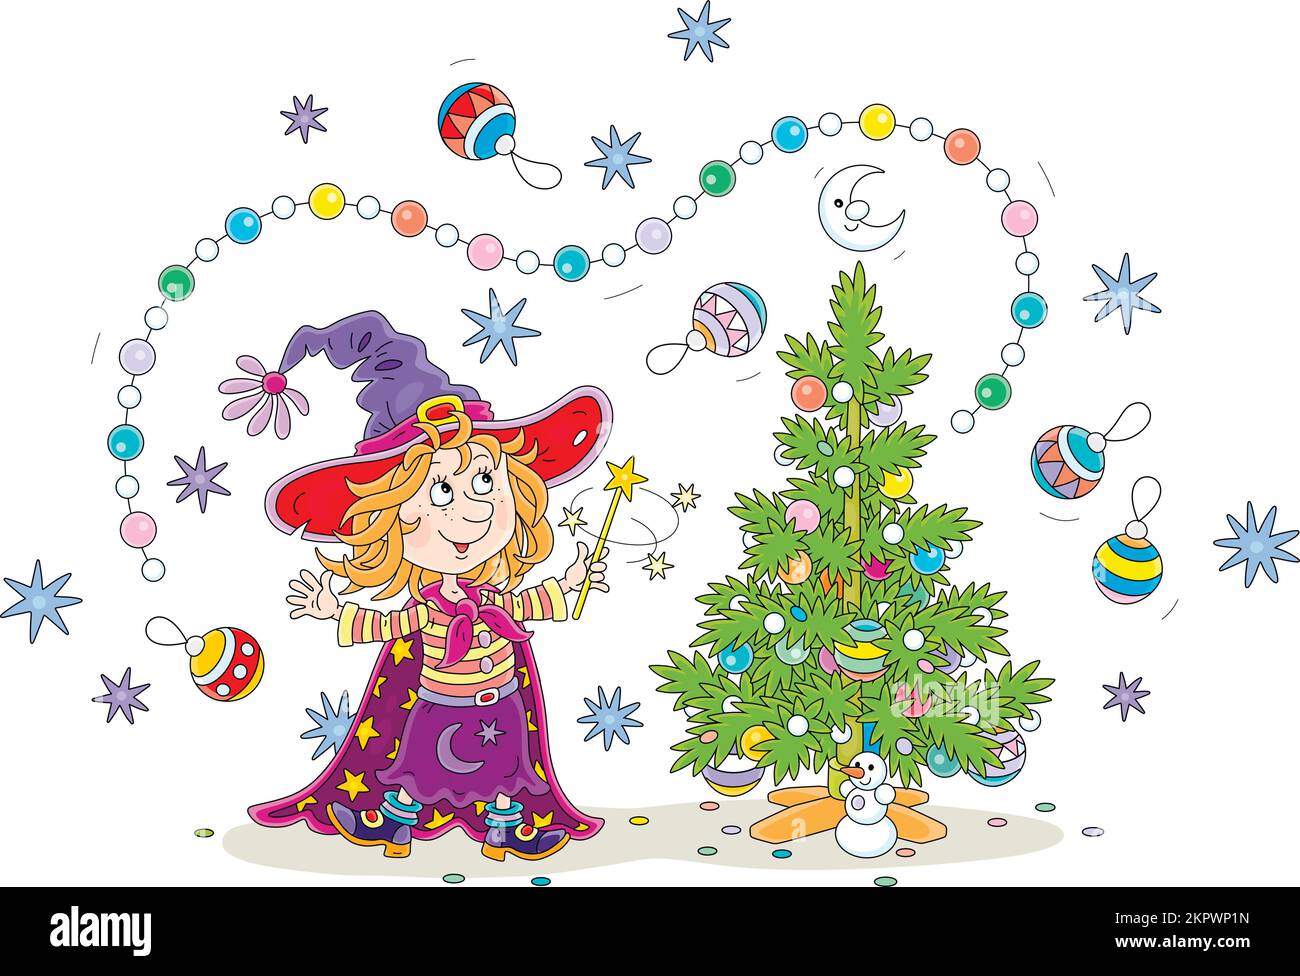 Eine glückliche kleine Hexe schwenkt mit ihrem Zauberstab und schmückt einen kleinen Weihnachtsbaum mit fliegenden bunten Girlanden, Spielzeugen und Bällen Stock Vektor